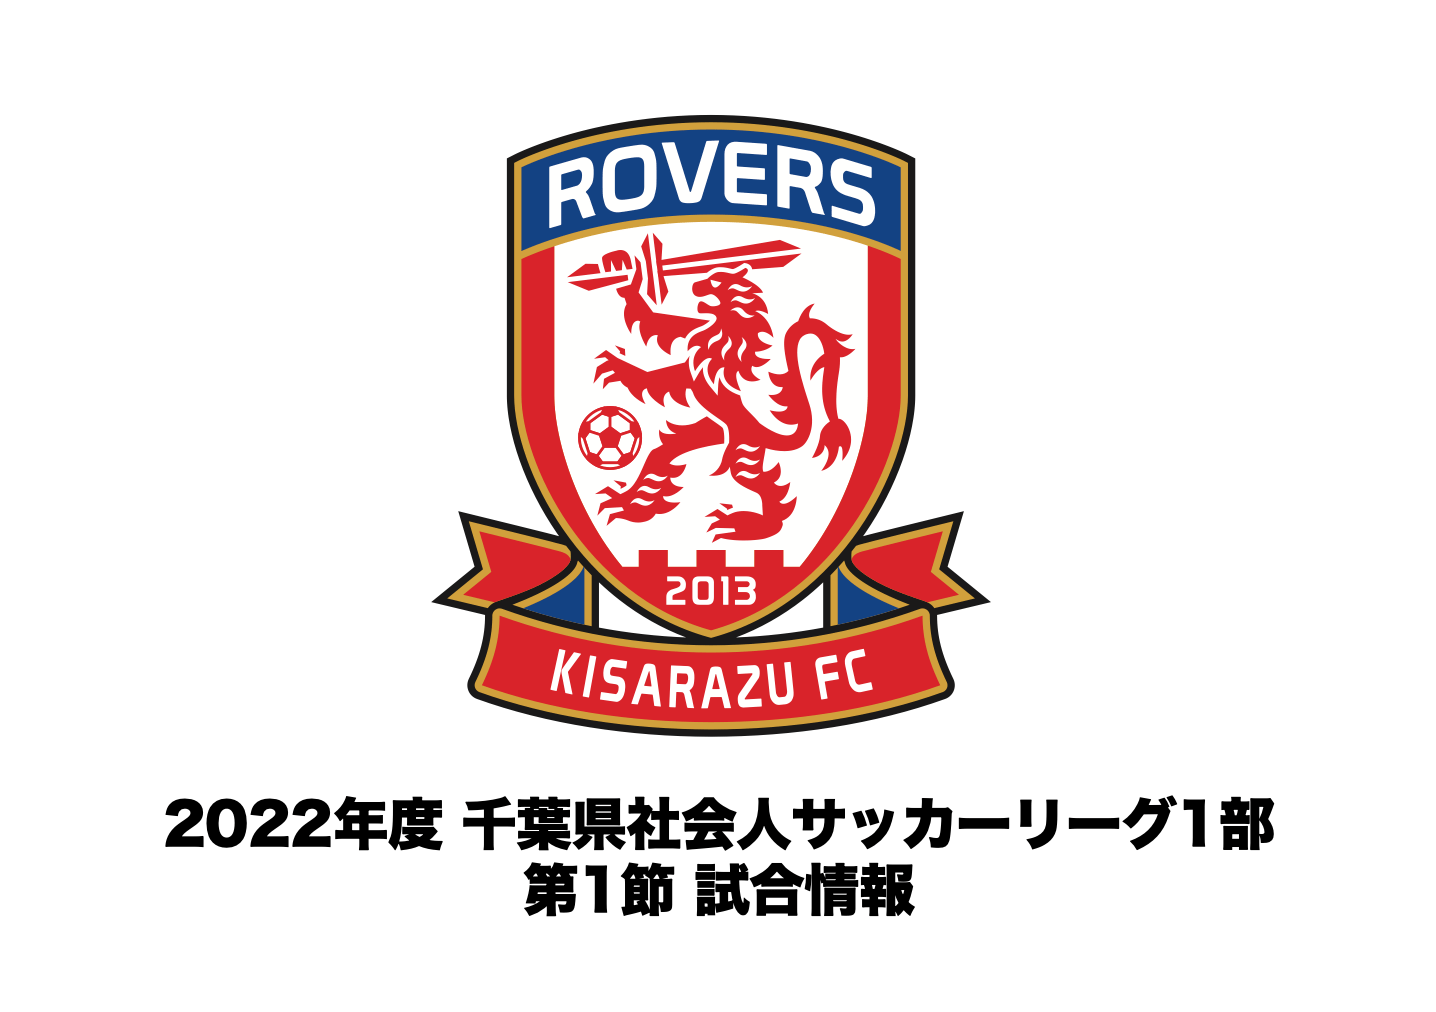 【試合情報】2022年度 千葉県社会人サッカーリーグ1部 第1節についてお知らせ